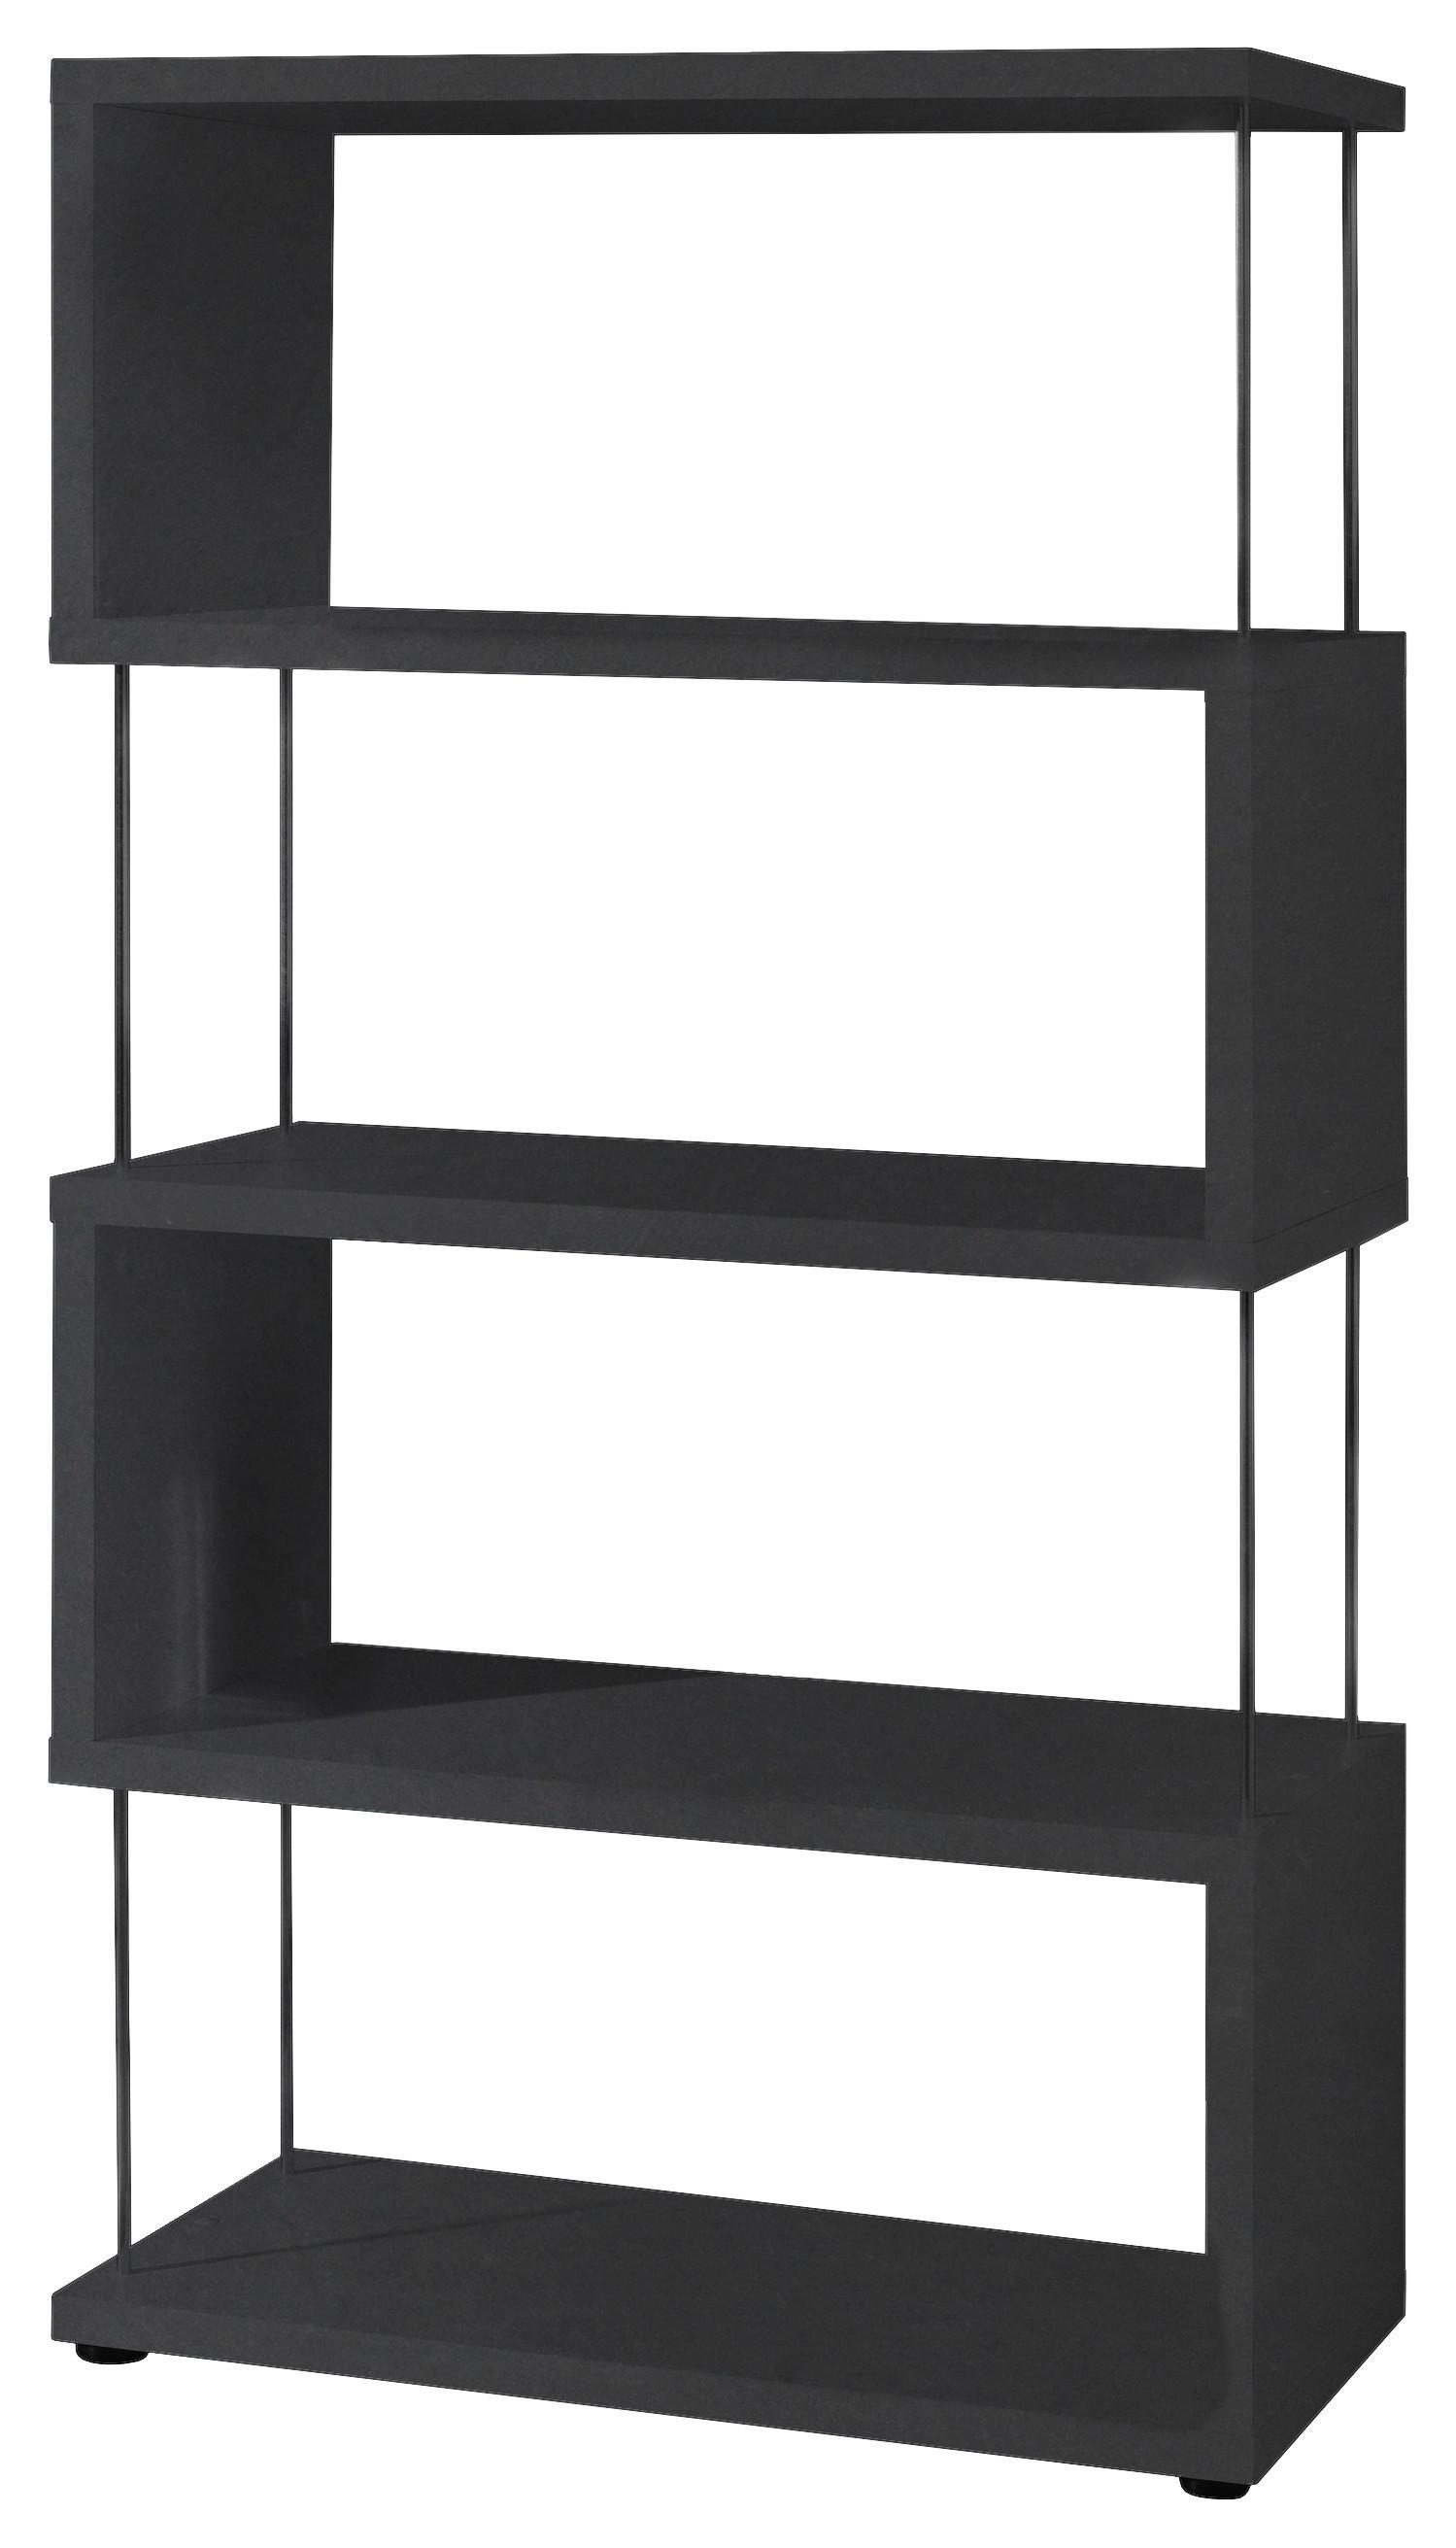 Stojací Regál Sticks - černá, Moderní, kompozitní dřevo/plast (66/126/33cm) - Modern Living